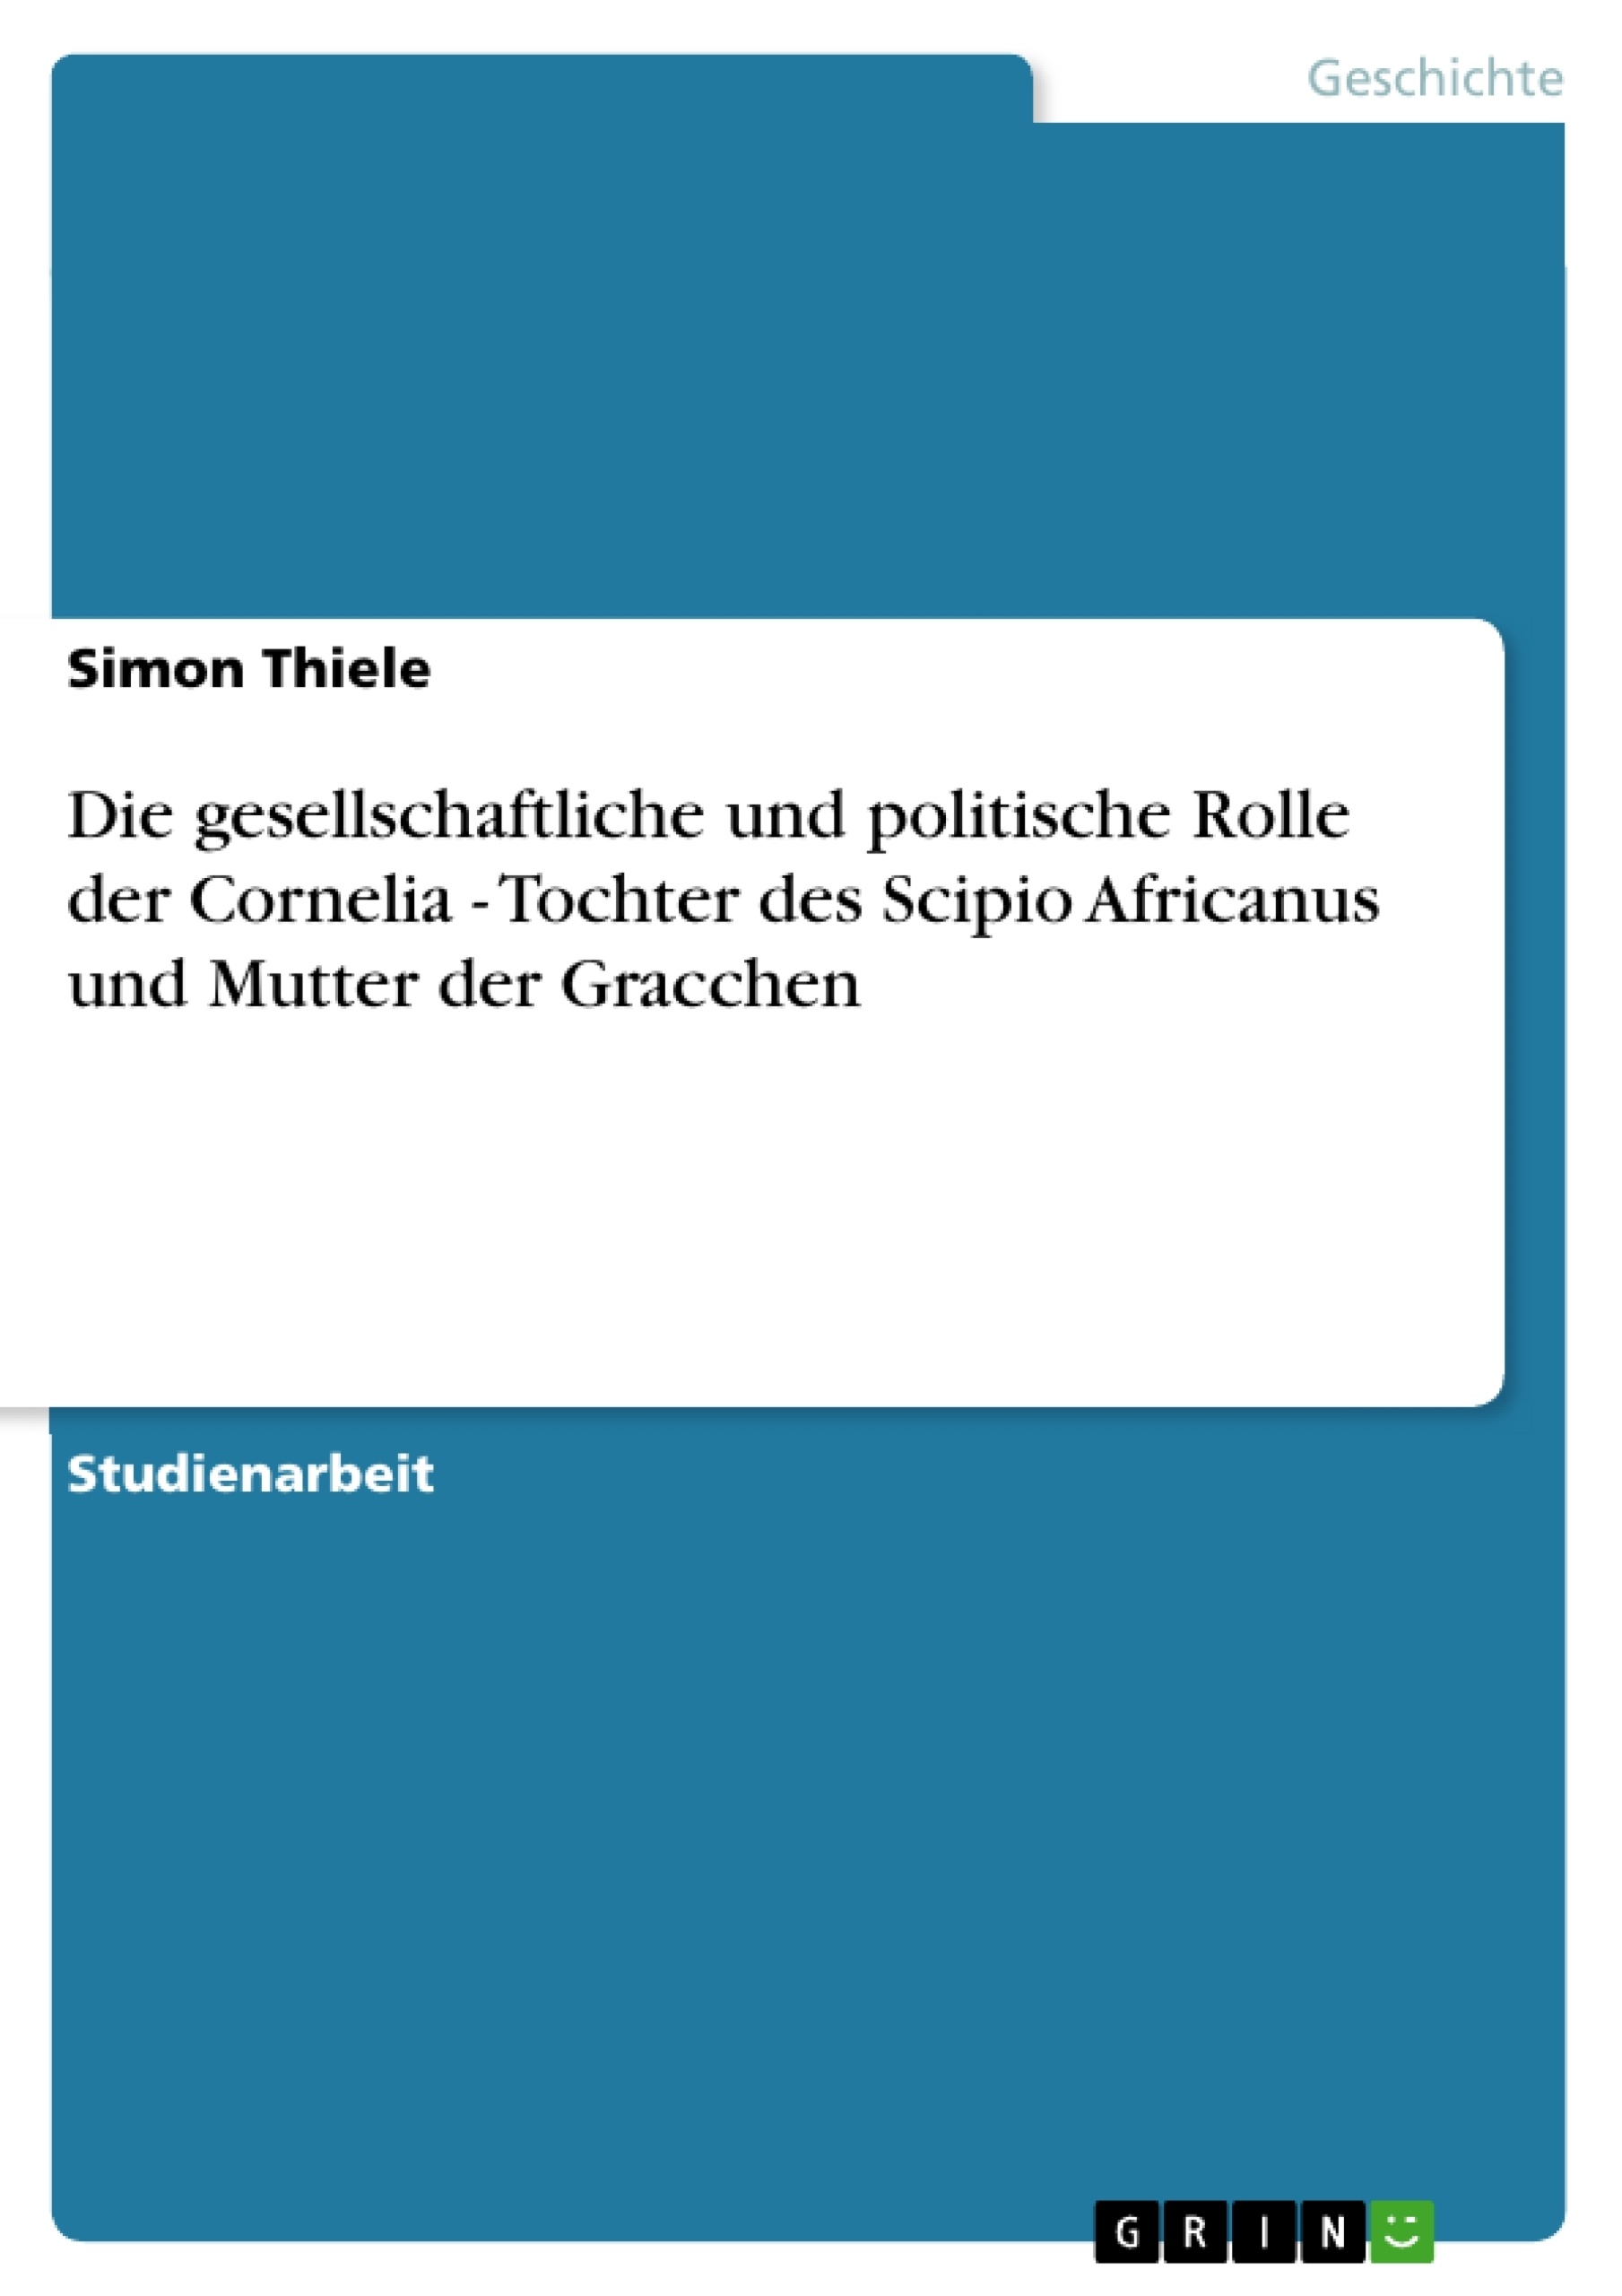 Título: Die gesellschaftliche und politische Rolle der Cornelia - Tochter des Scipio Africanus und Mutter der Gracchen